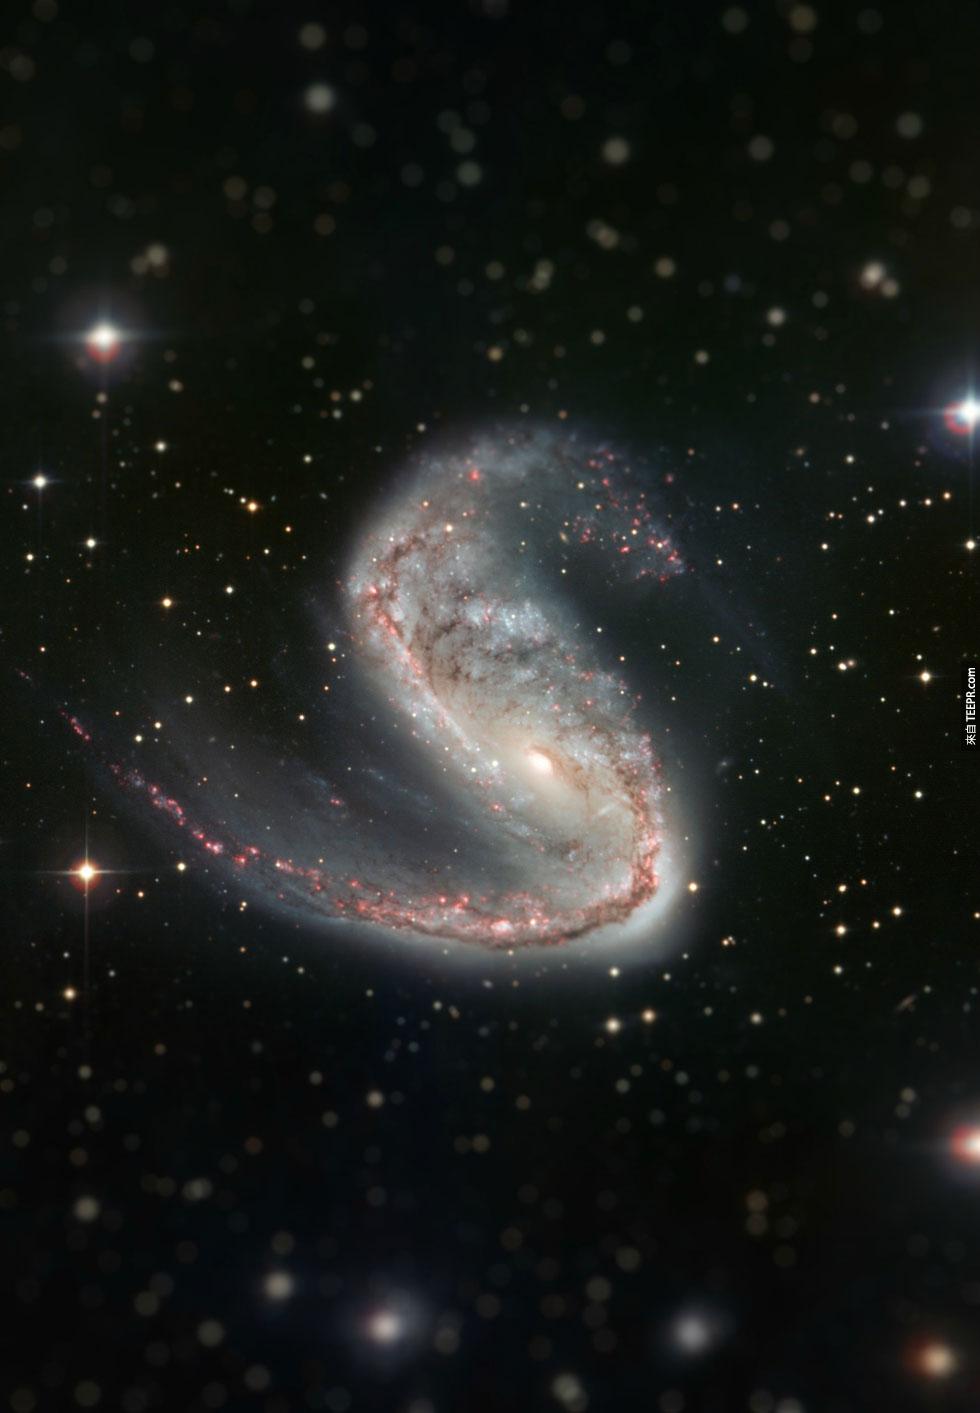 4. 肉鉤星系 (Meathook Galaxy)